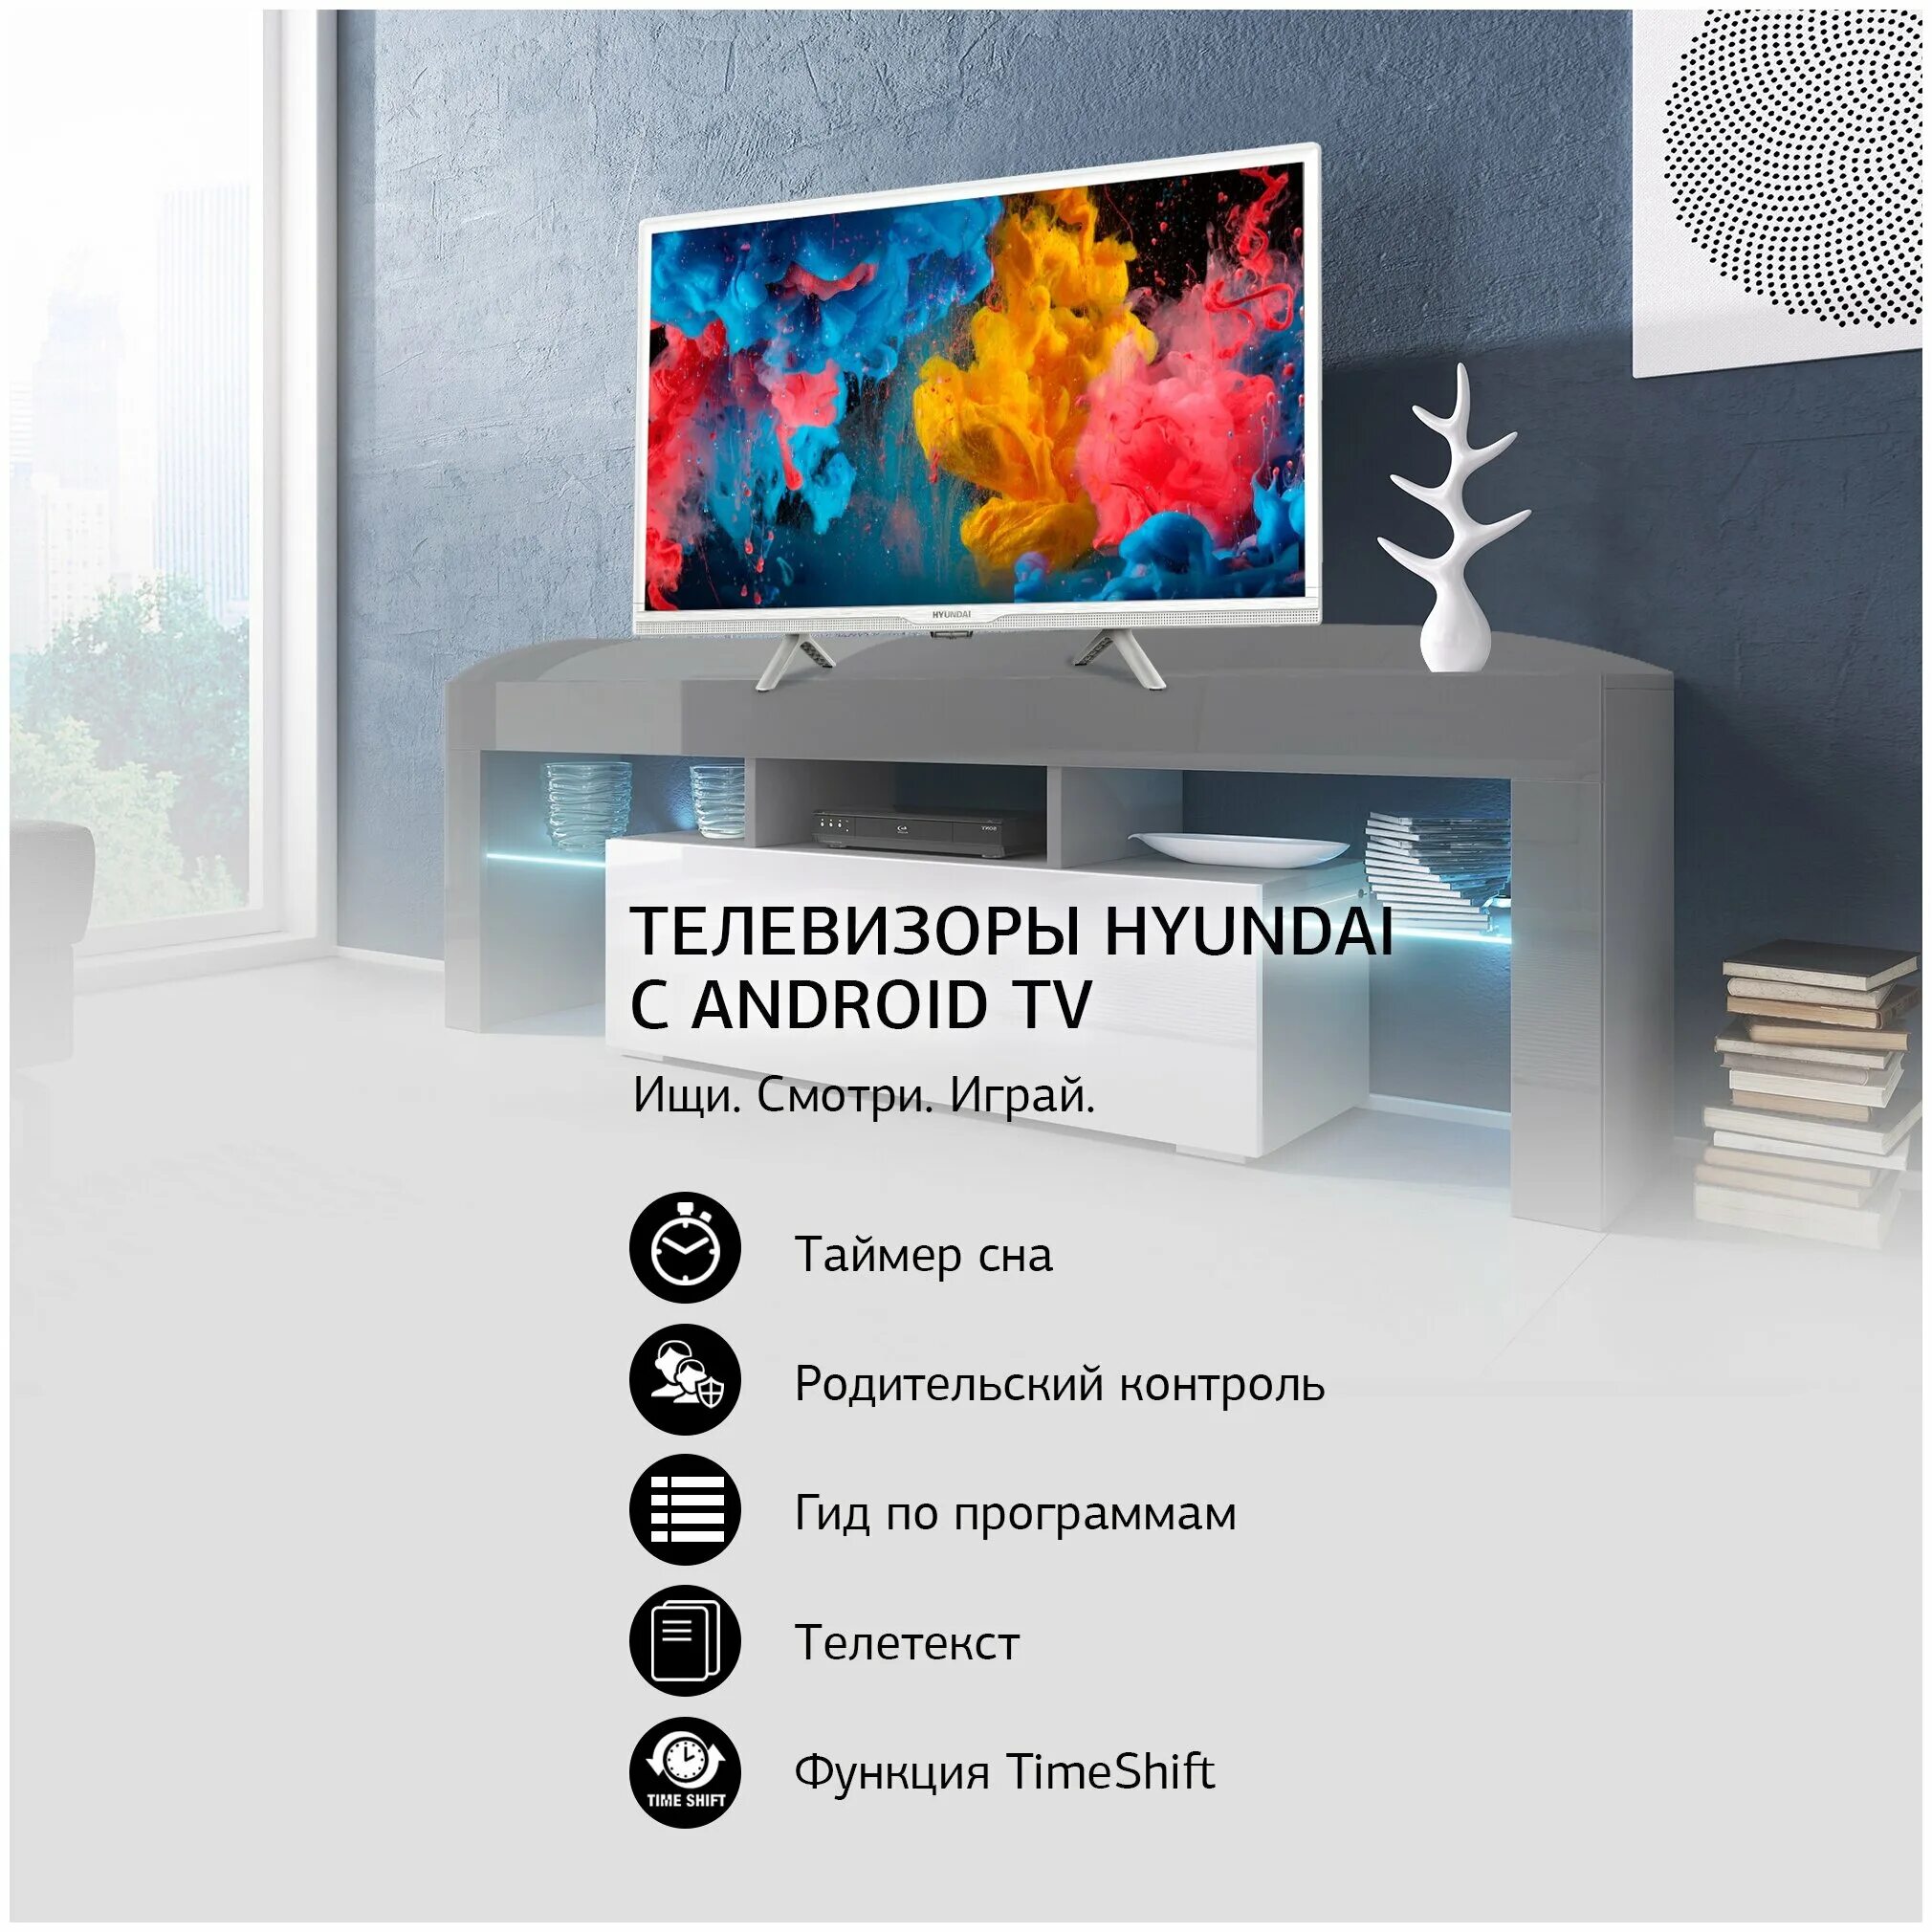 Телевизор hyundai 24. Телевизор Hyundai h-led24fs5002. Led телевизор 24" Hyundai h-led24fs5002 белый.